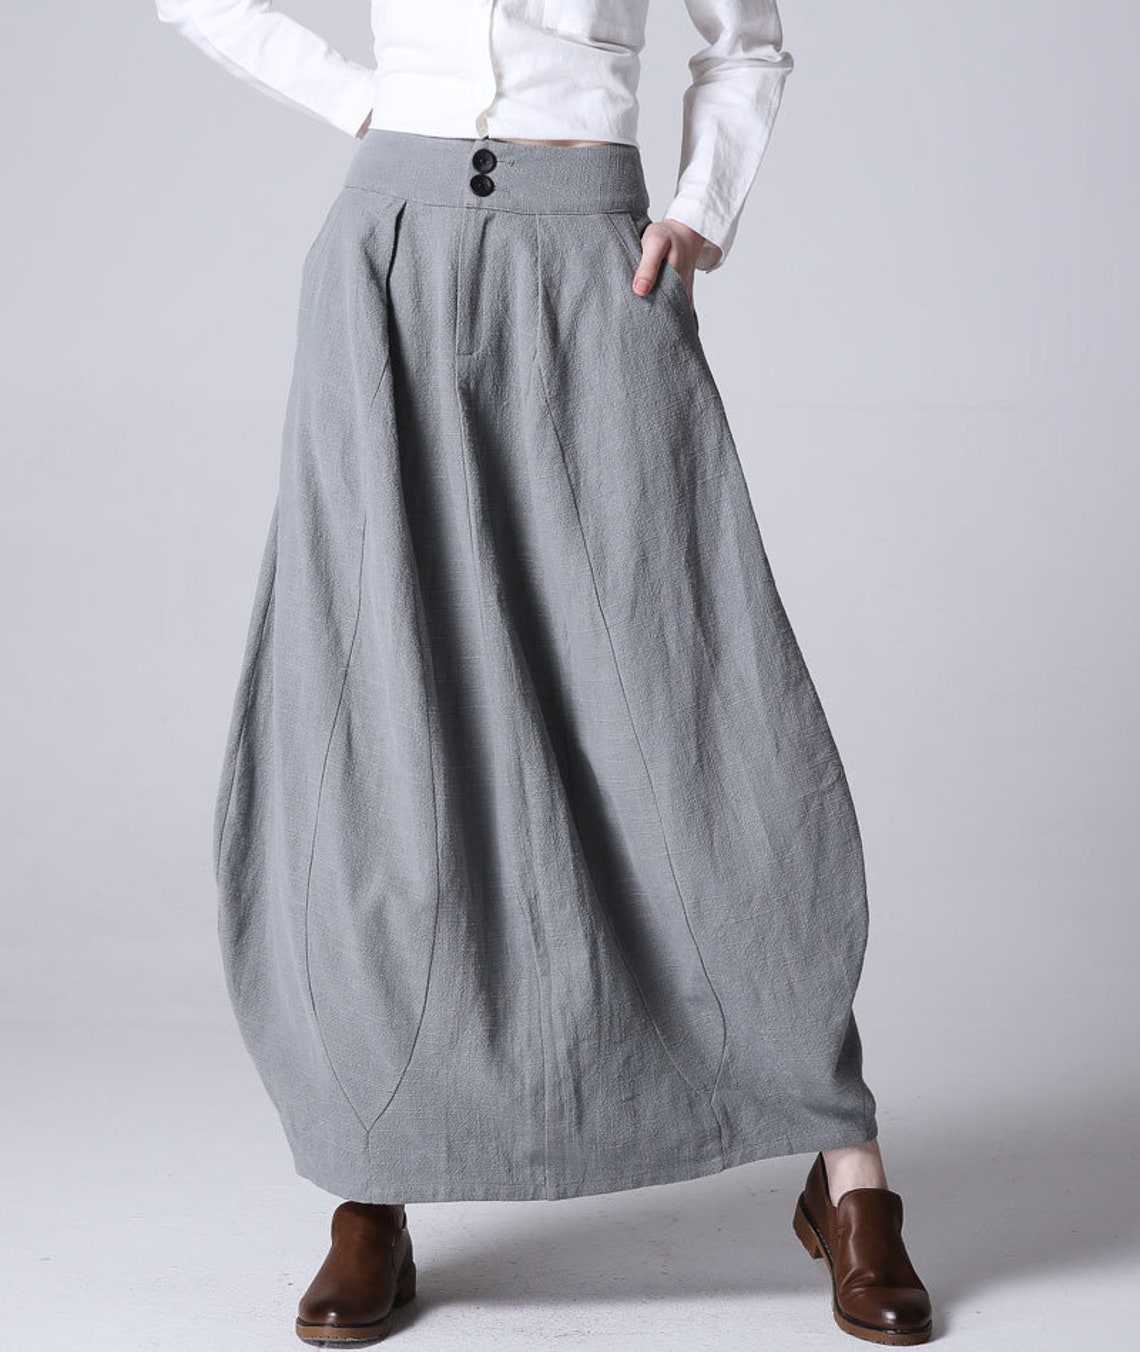 Linen skirt Linen Midi skirt with pockets High waisted | Etsy